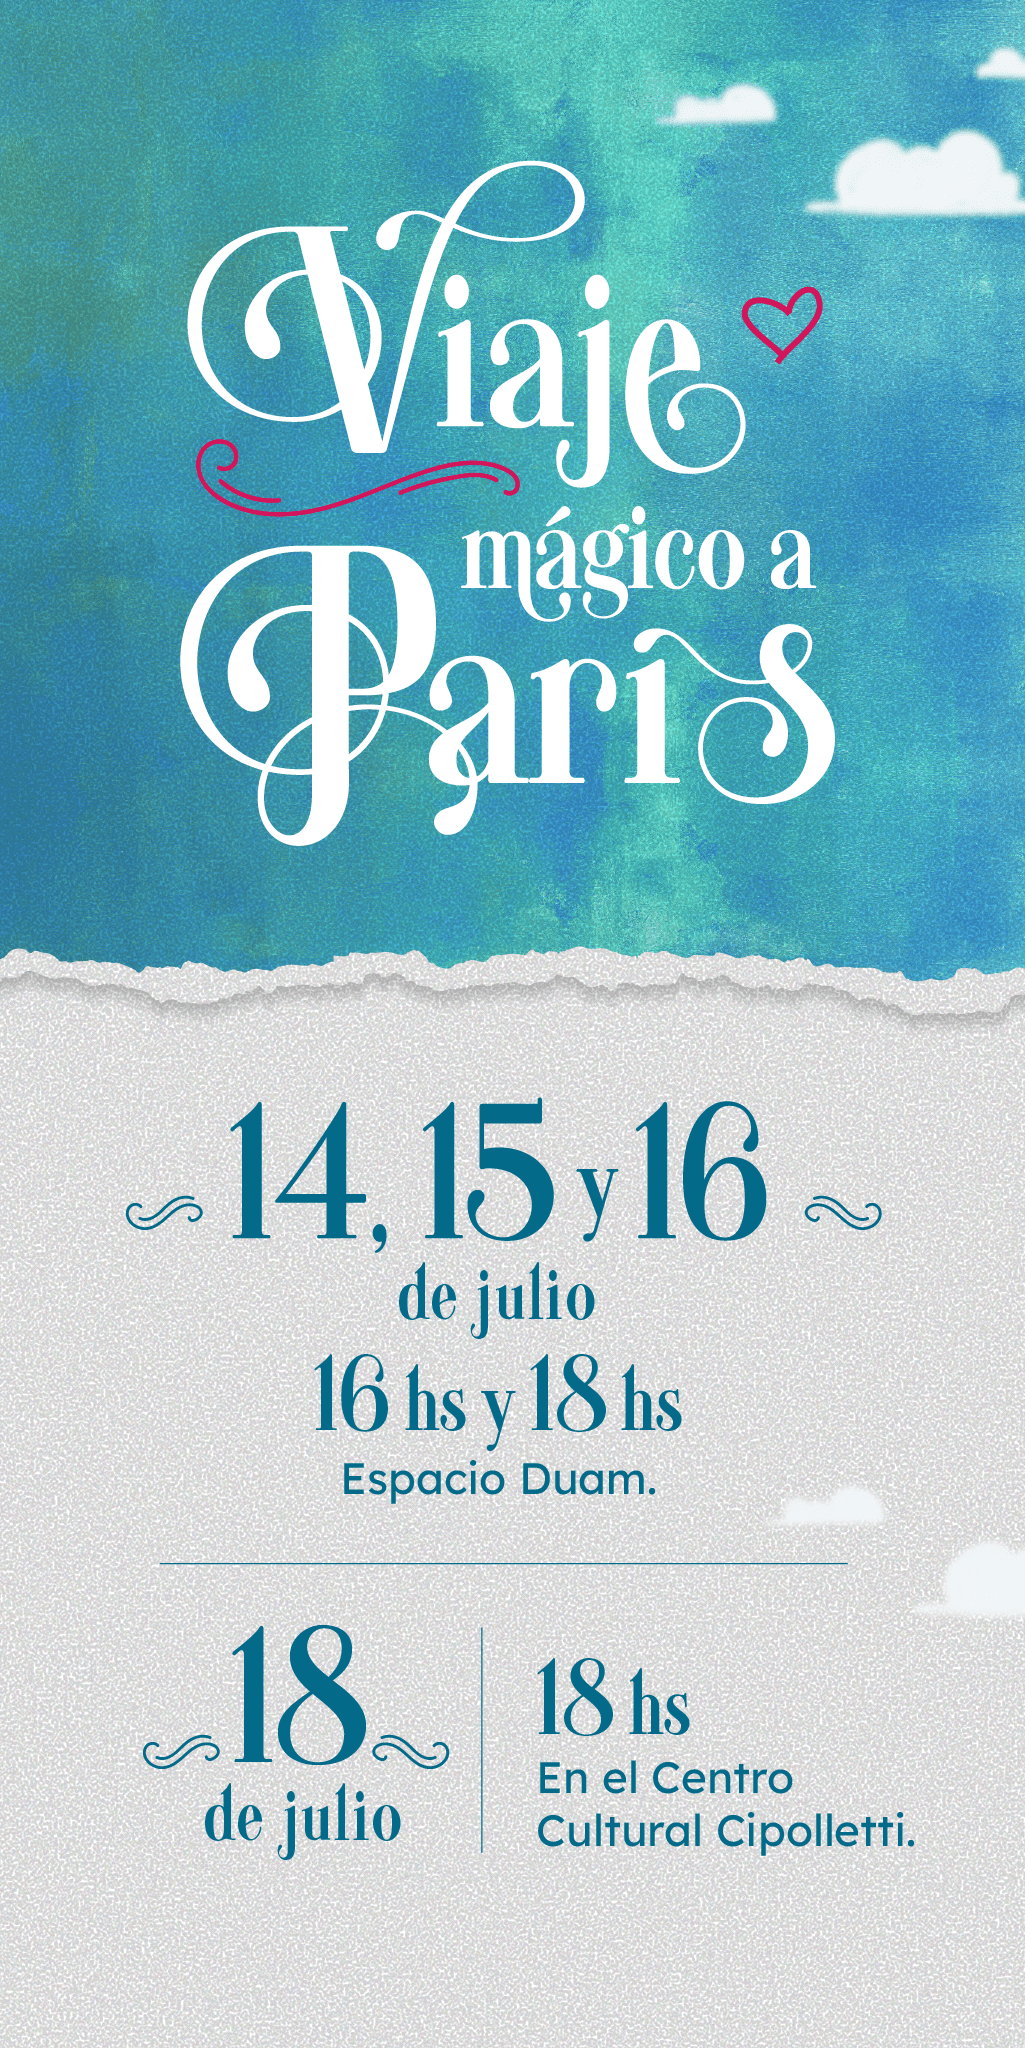 Viaje Mágico a Paris • 14, 15 y 16 de Julio: 16Hs y 18Hs - Espacio Duam • 18 de Julio: 18Hs - Centro Cultural Cipolletti